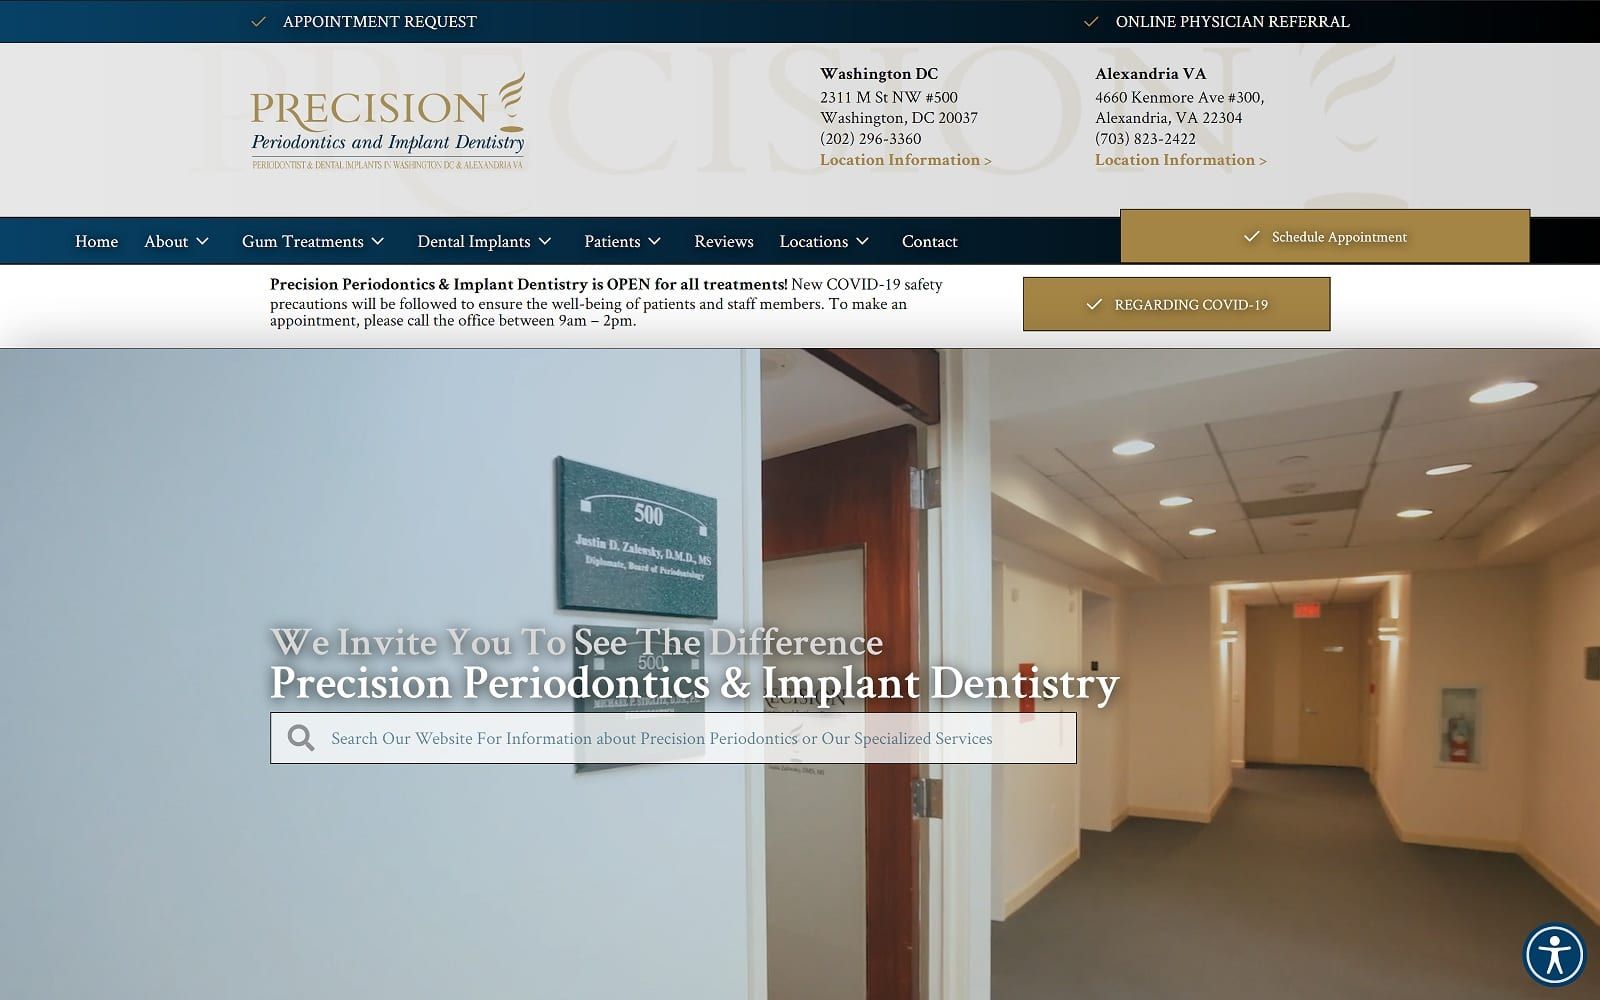 The screenshot of precision periodontics and implant dentistry - alexandria precisioninperio. Com website